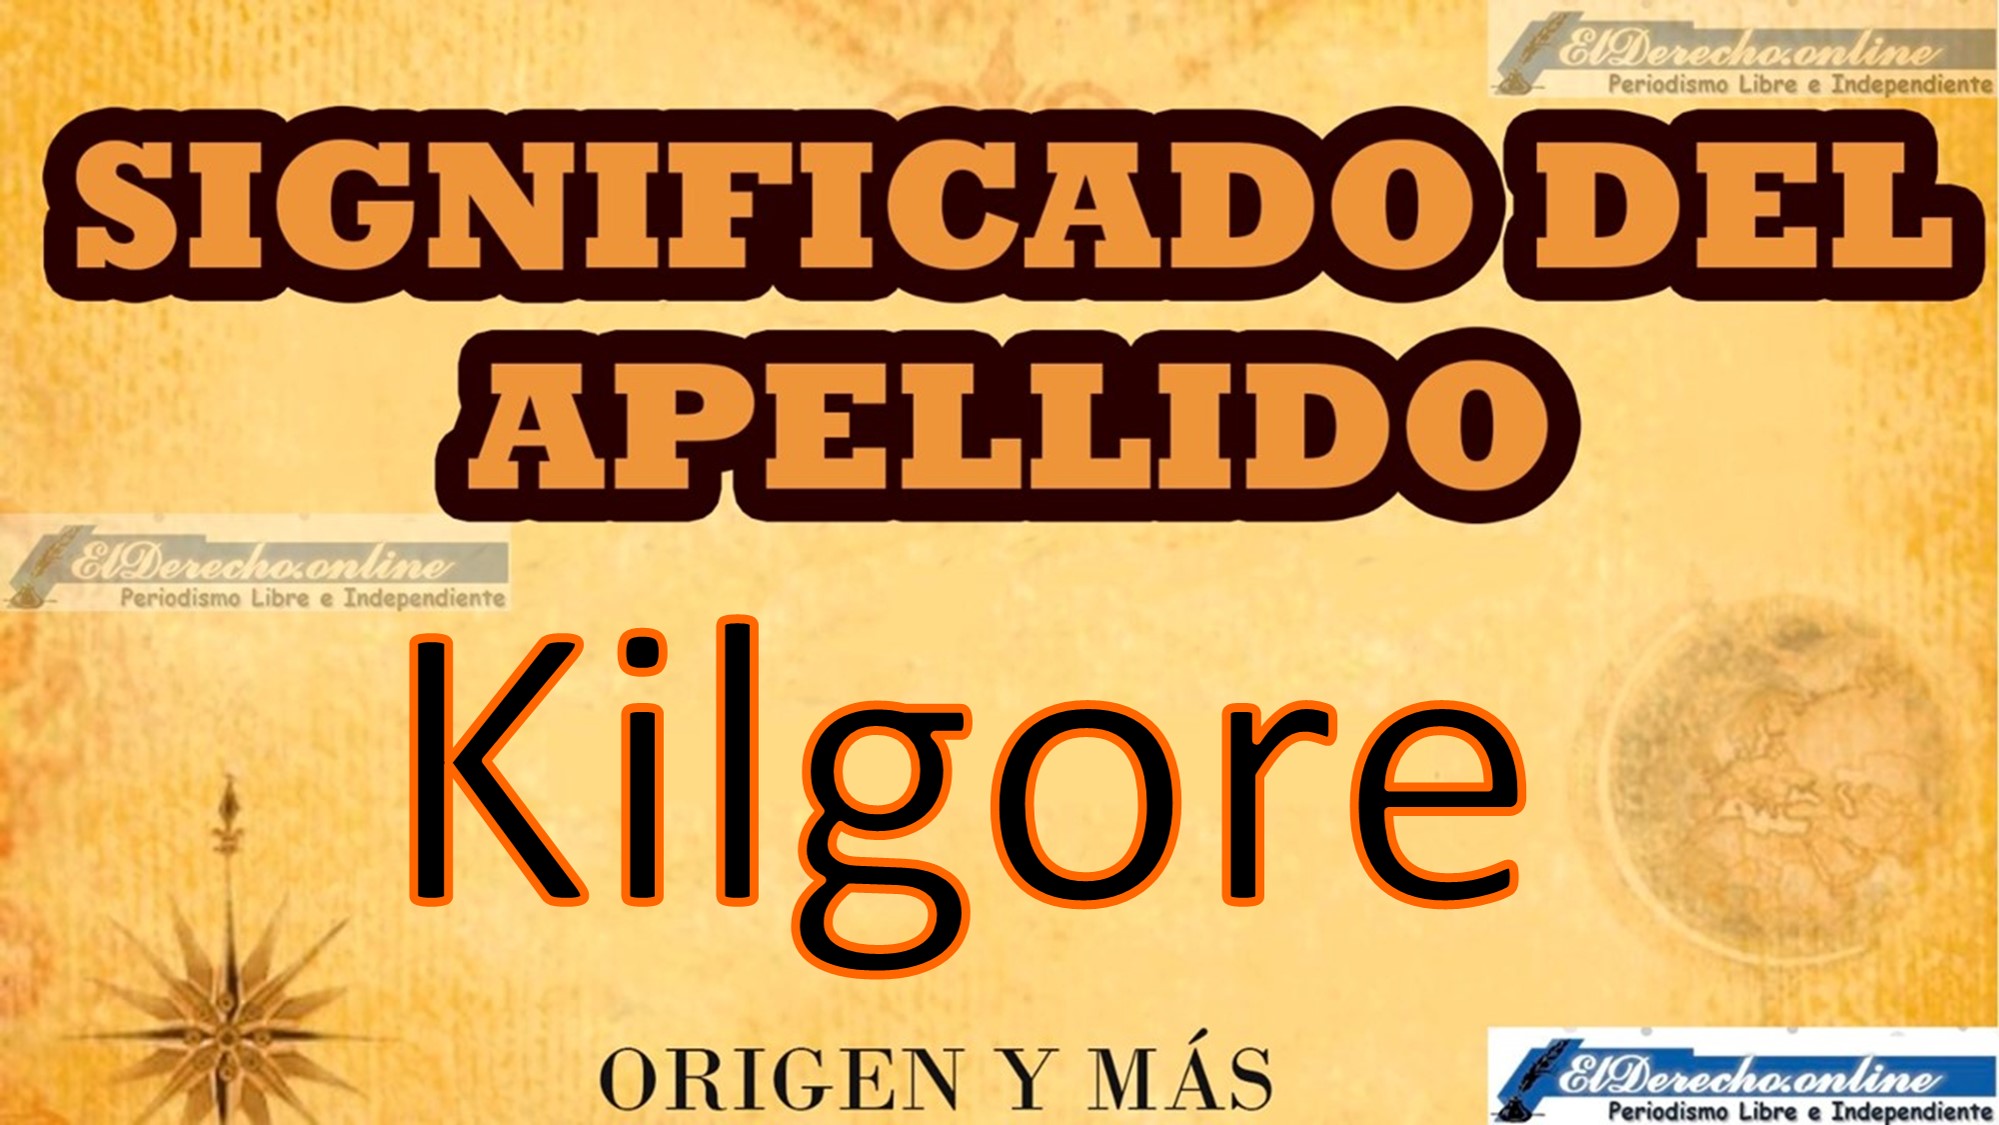 Significado del apellido Kilgore, Origen y más